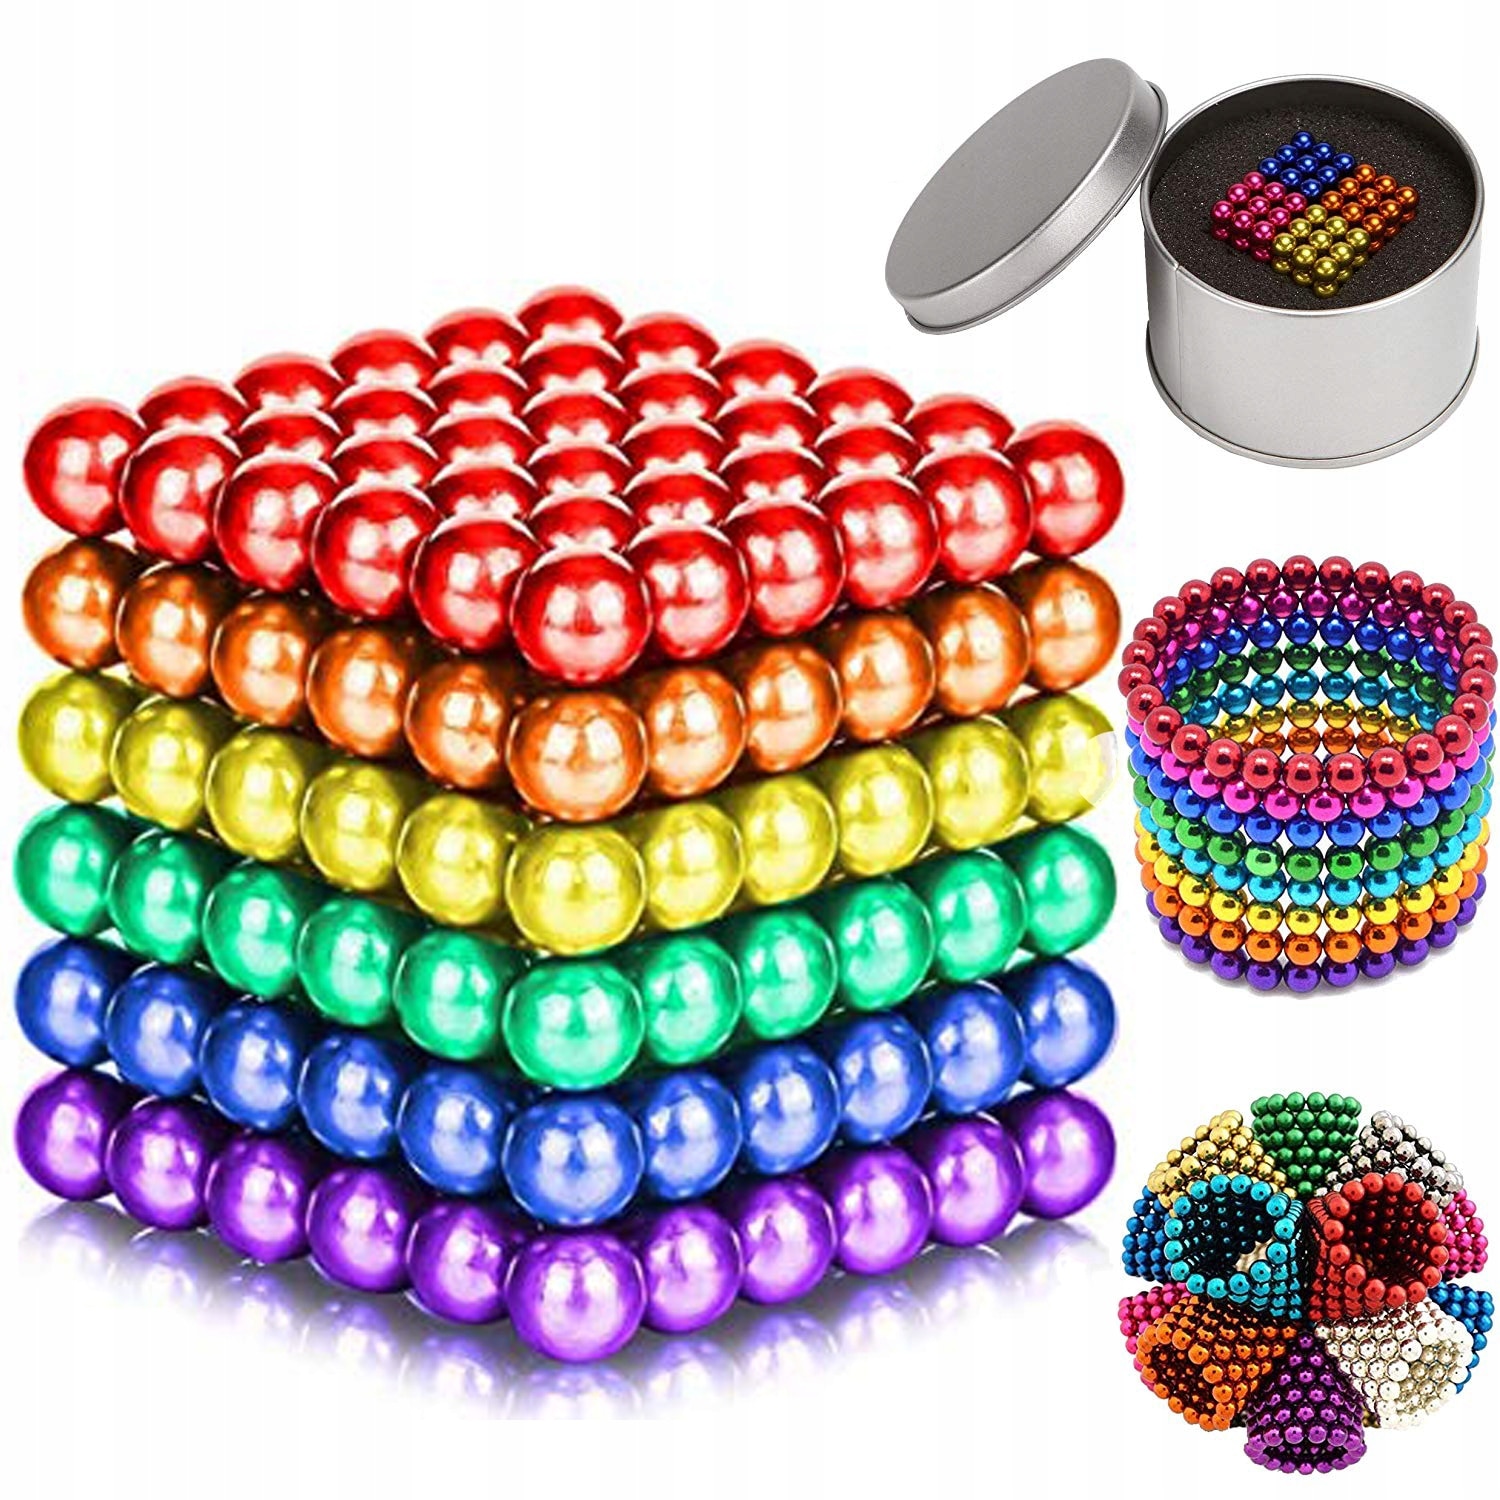 Купить шарик цена. Неокуб 3мм магнитный. Неокуб - набор 216 магнитных шариков. Нано кубик магнитные шарики. Магнитные шарики мм10 конструктор.